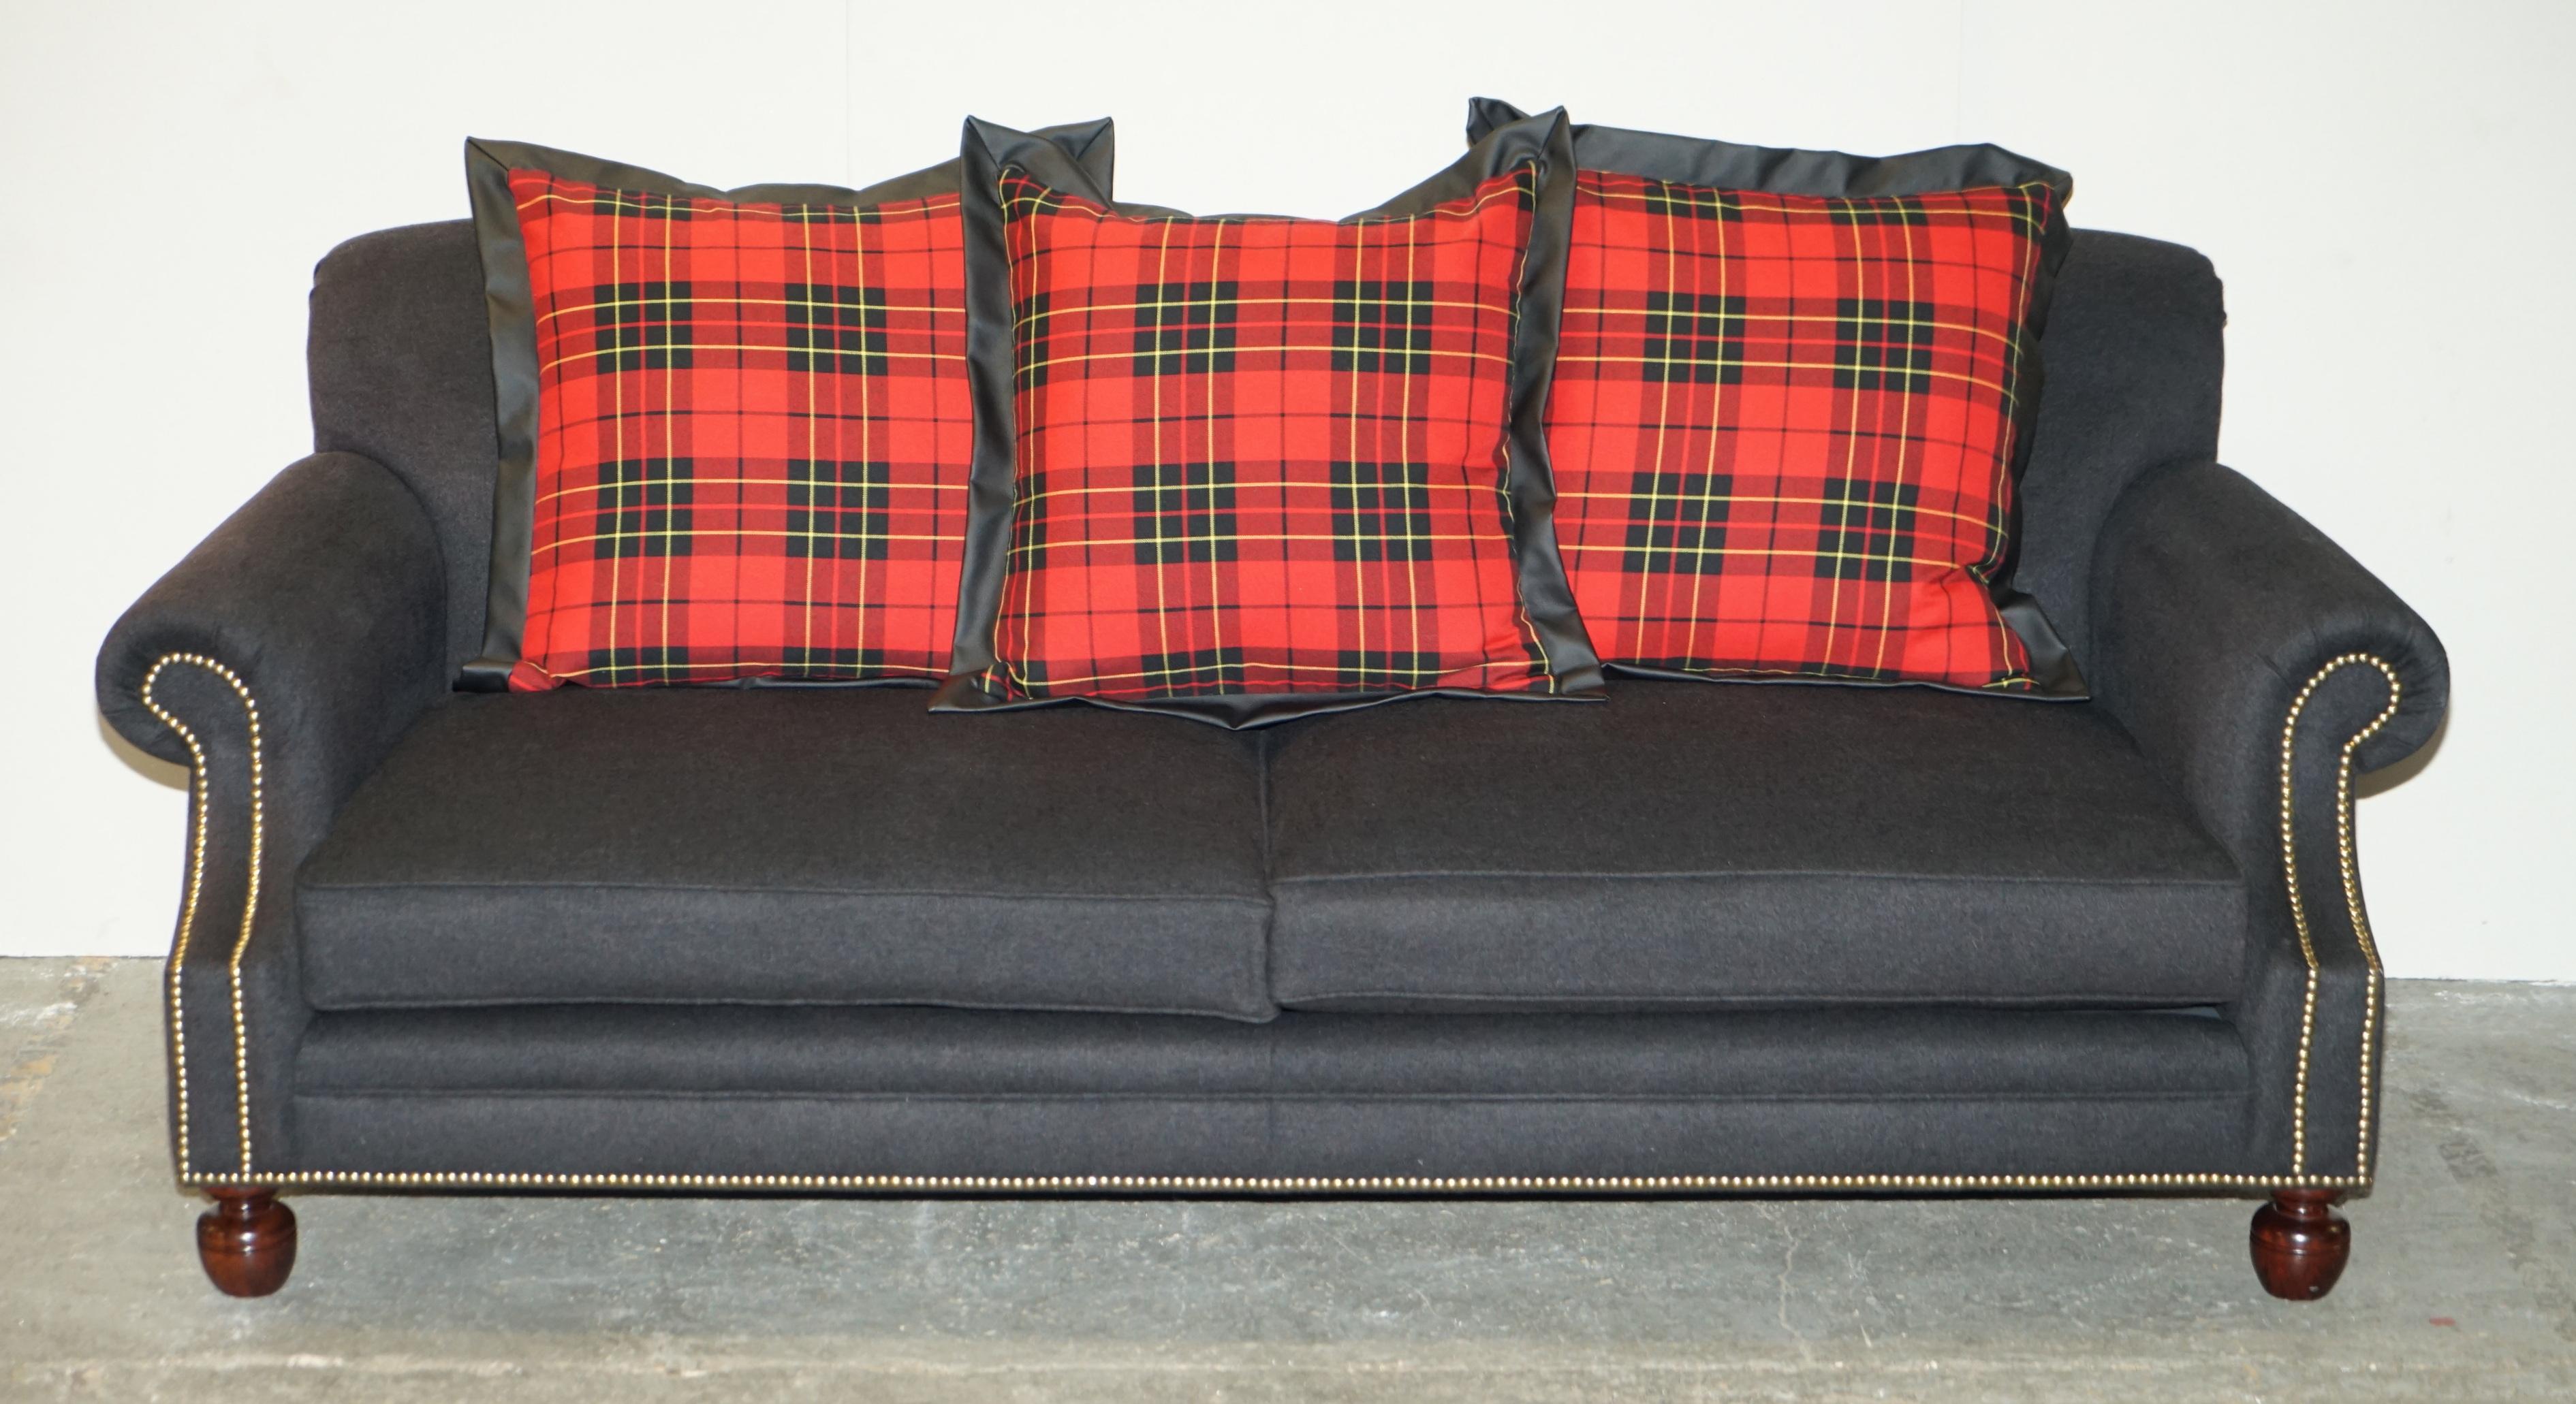 Nous sommes ravis d'offrir à la vente cette paire exquise de canapés et de fauteuils Ralph Lauren Aran Isles RRP £30,300, tapissés de laine écossaise avec des coussins surdimensionnés remplis de plumes. 

J'ai environ 40 meubles neufs Ralph Lauren